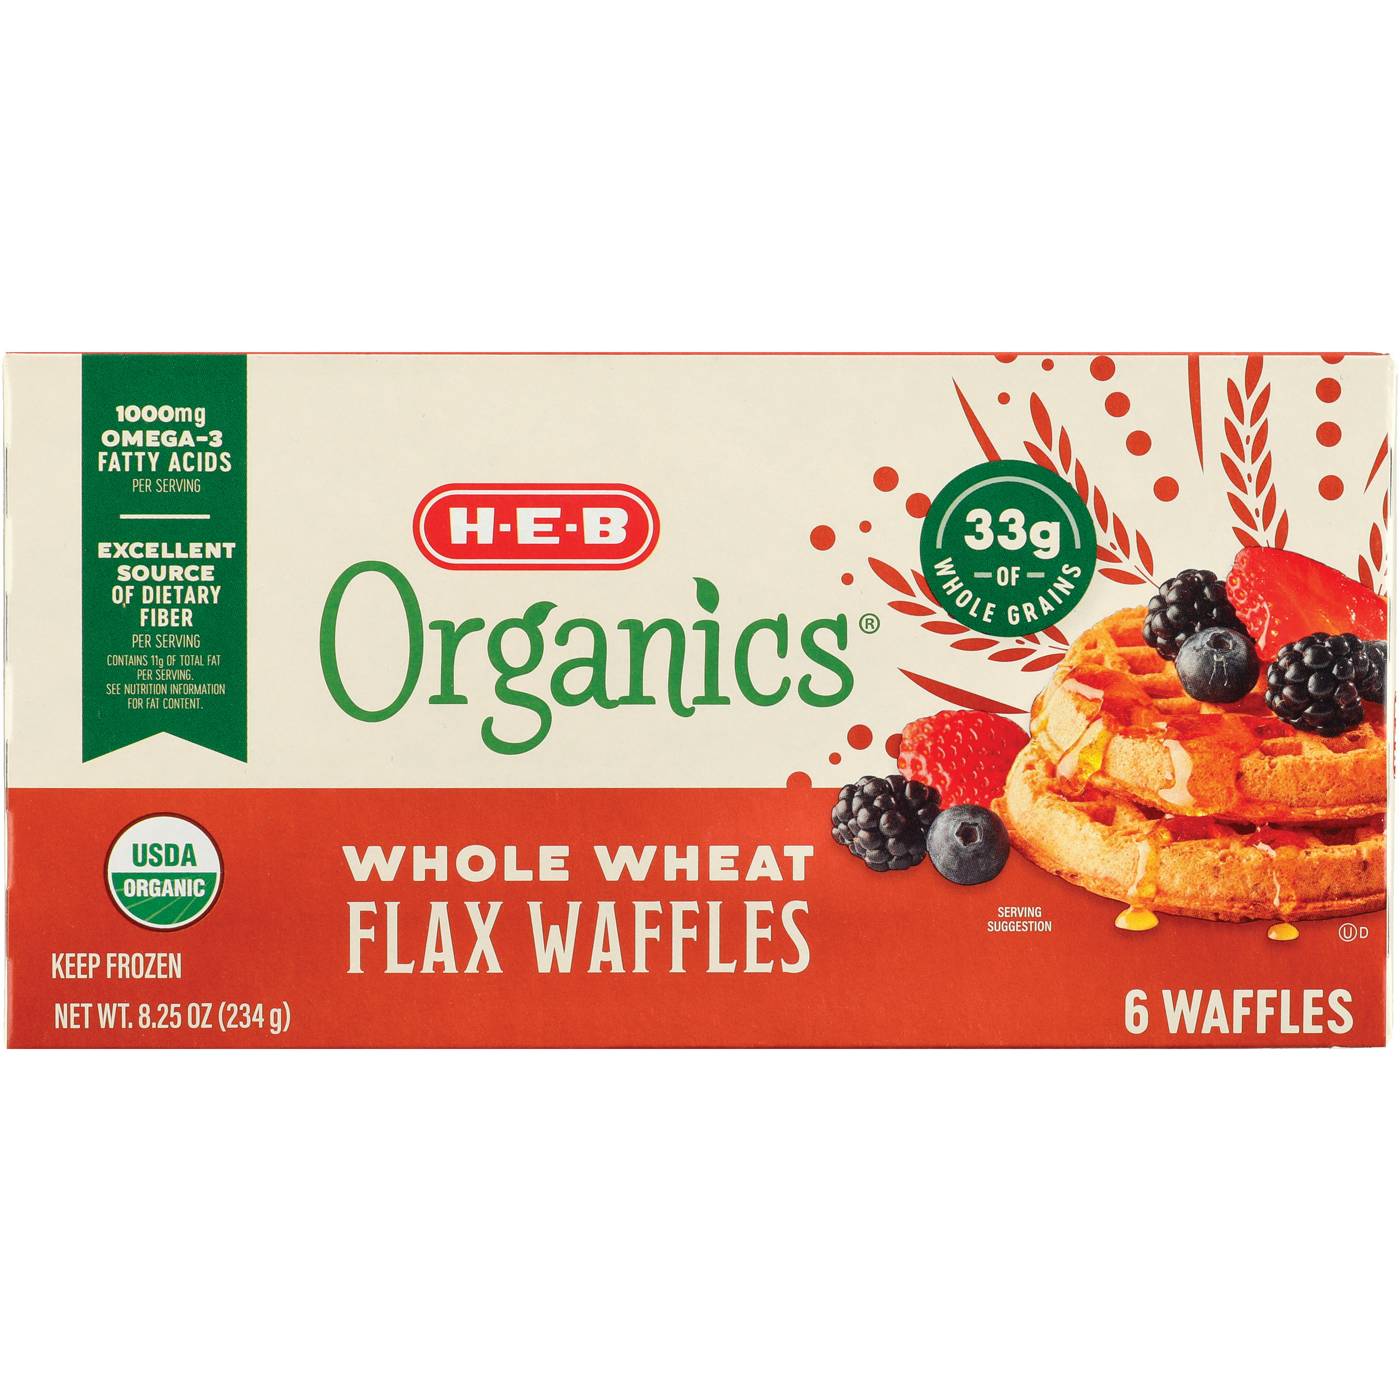 H-E-B Organics Frozen Waffles - Whole Wheat Flax; image 1 of 2